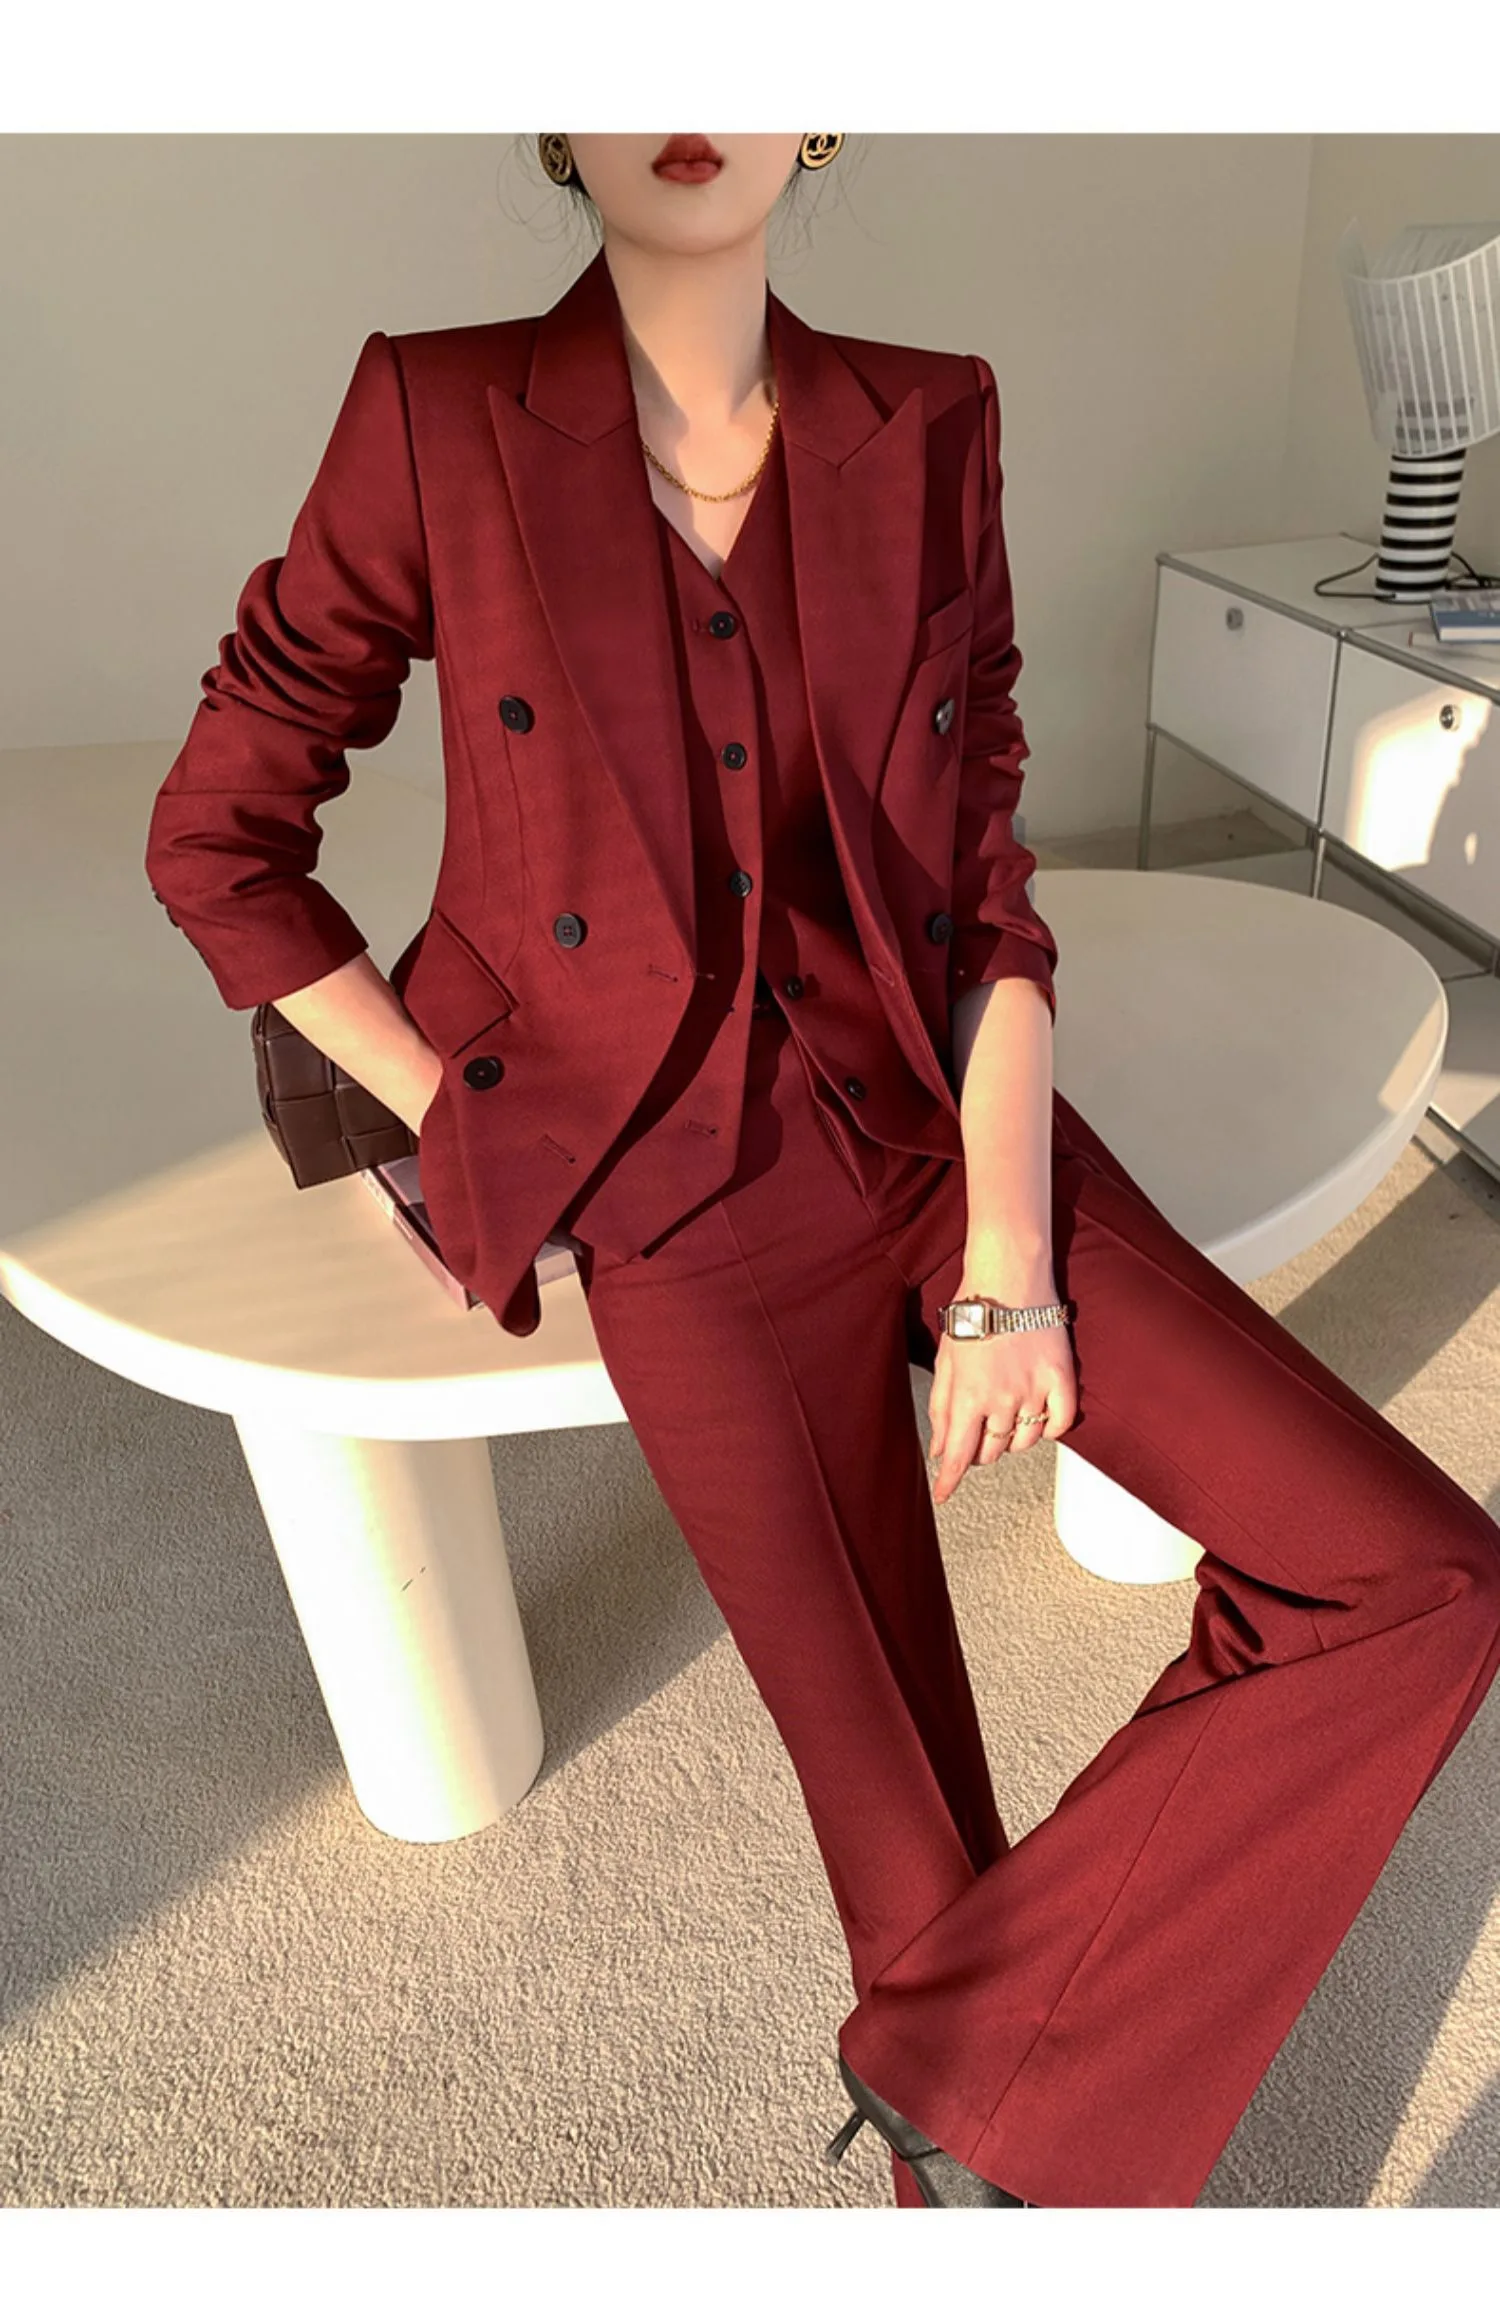 Elegant Burgundy Blazer Suit Office Women's Three-Piece Set Professional Formal Vest Pants Suit 2022 Autumn Korean Clothing